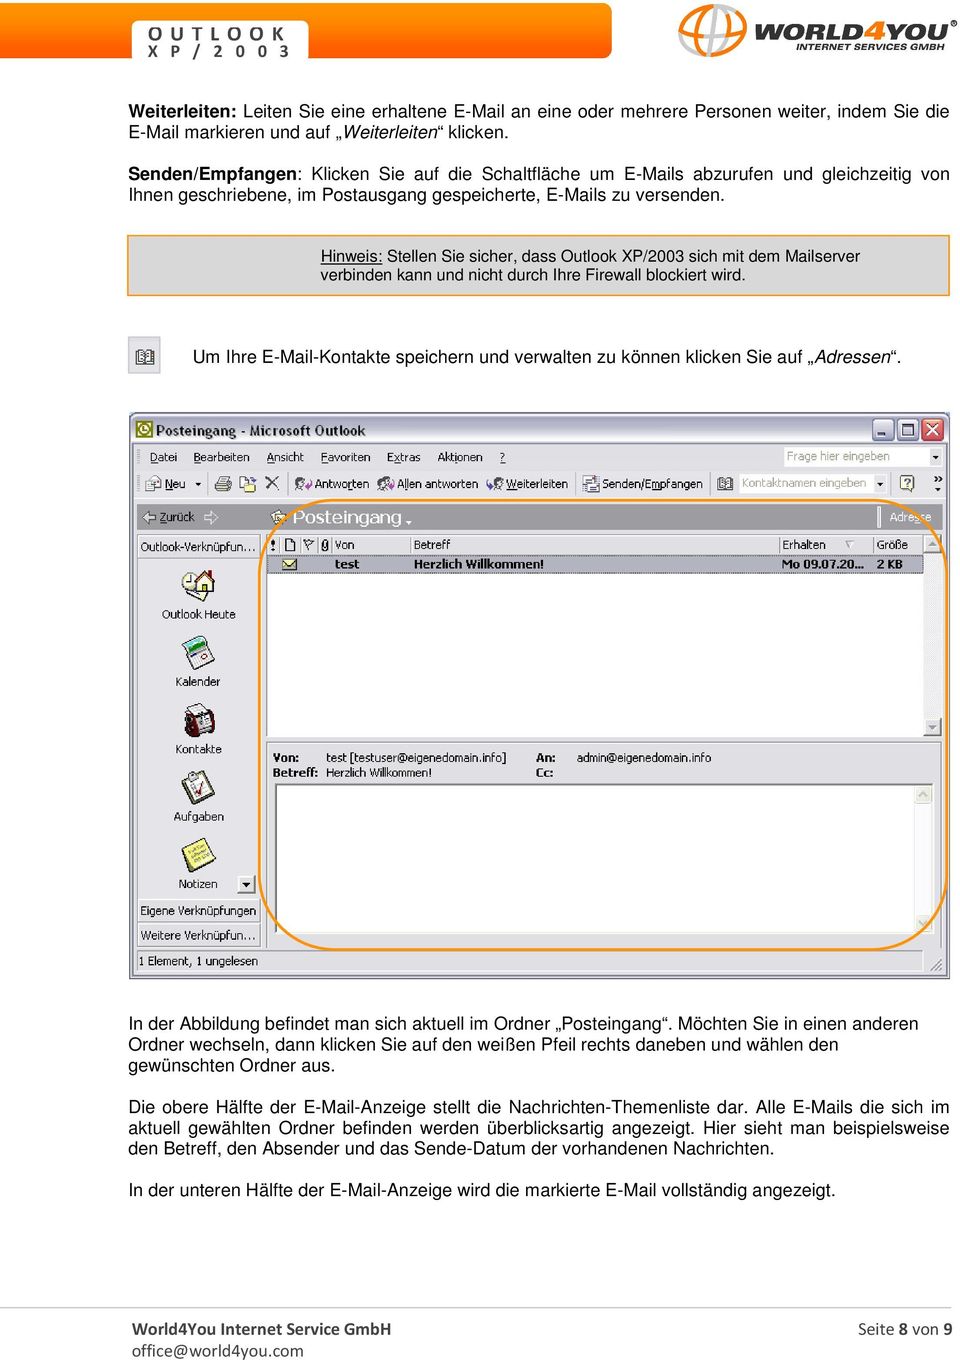 Hinweis: Stellen Sie sicher, dass Outlook XP/2003 sich mit dem Mailserver verbinden kann und nicht durch Ihre Firewall blockiert wird.